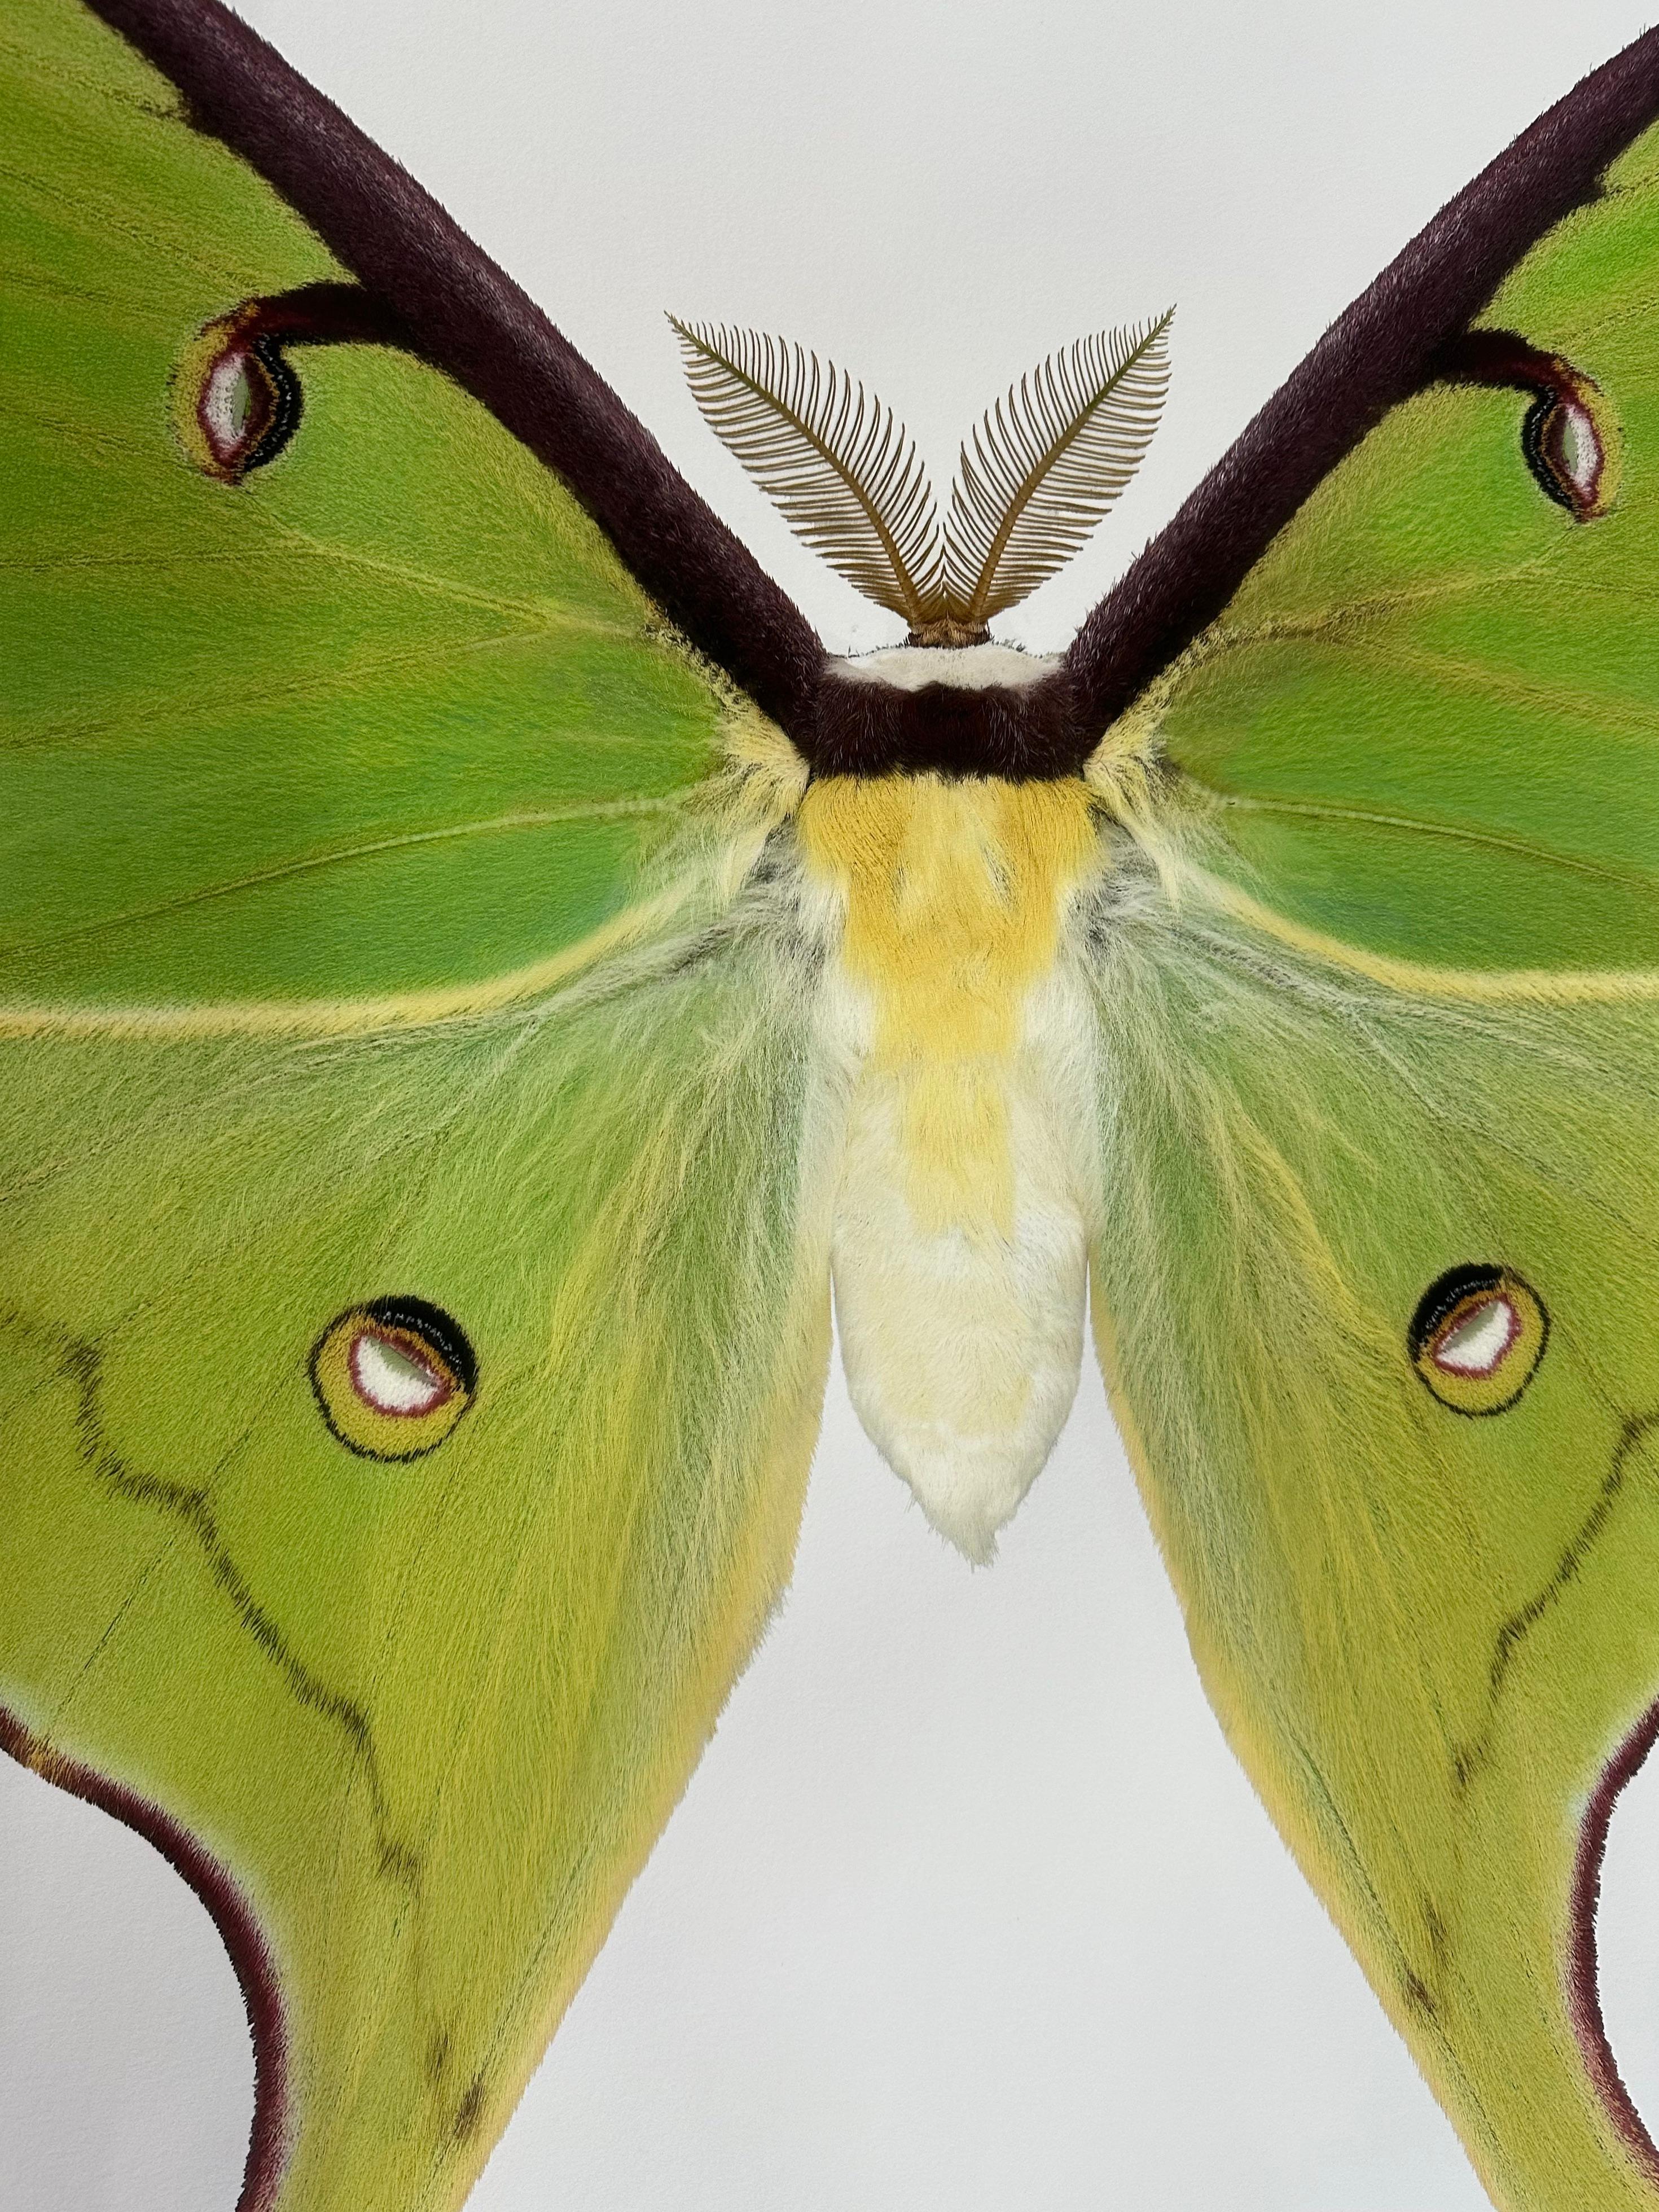 Auf diesem sehr detaillierten Pigmentdruck auf Aquarellpapier ist ein hellgrüner Nachtfalter mit braunen, kreisförmigen Markierungen auf den Flügeln und einem flauschigen, gelben Hinterleib vor einem weißen Hintergrund zu sehen. 

Der angegebene